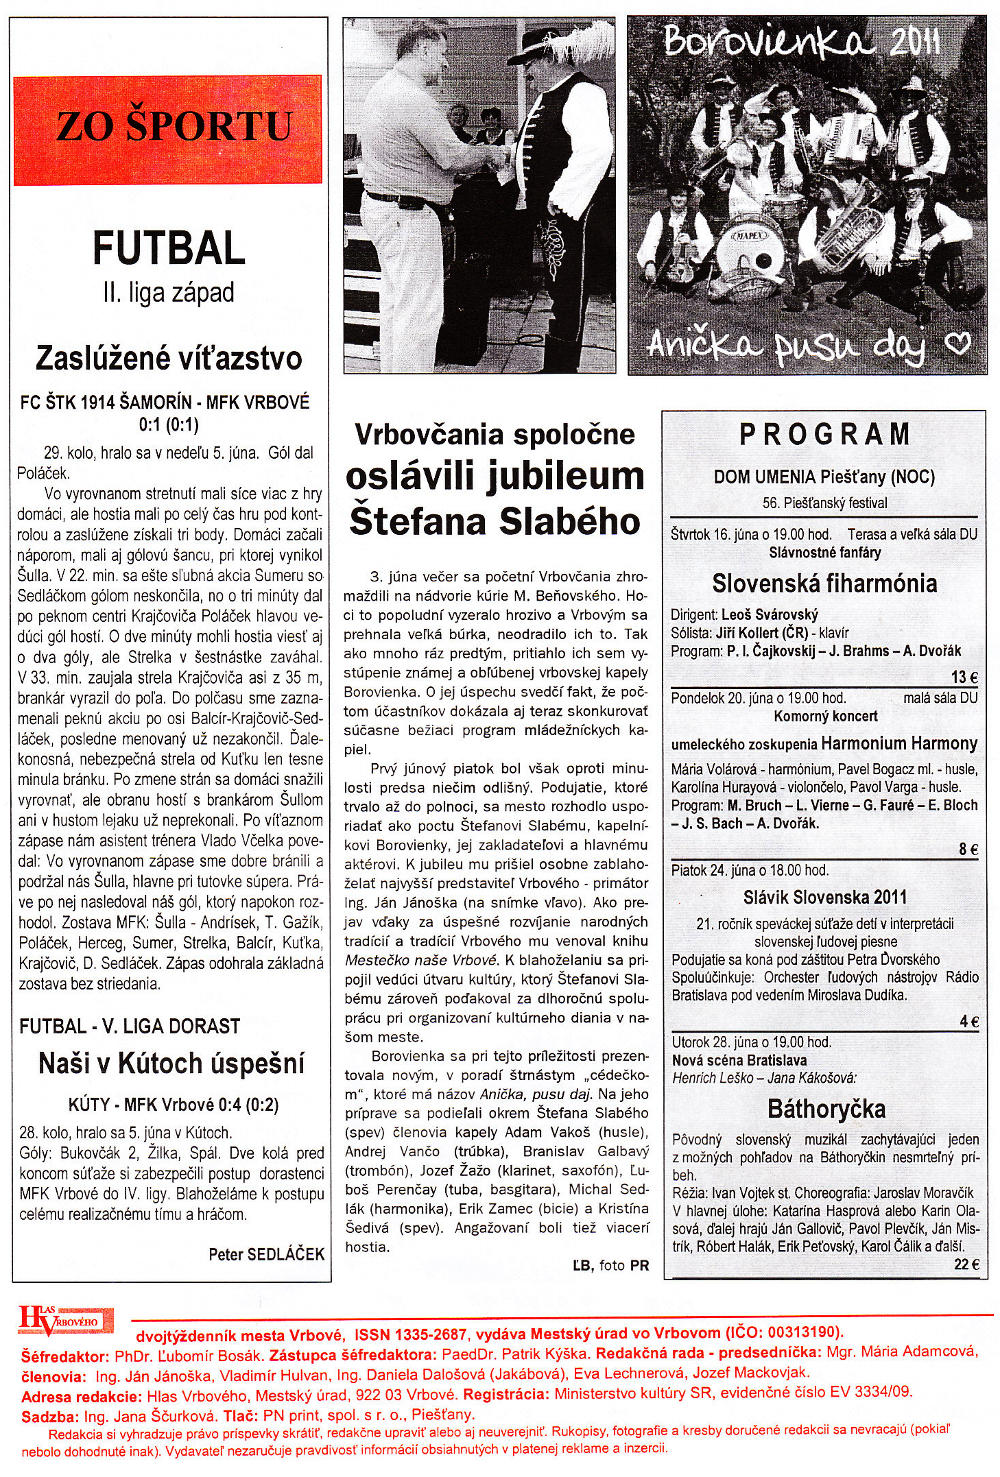 Hlas Vrbového 12/2011, strana 8